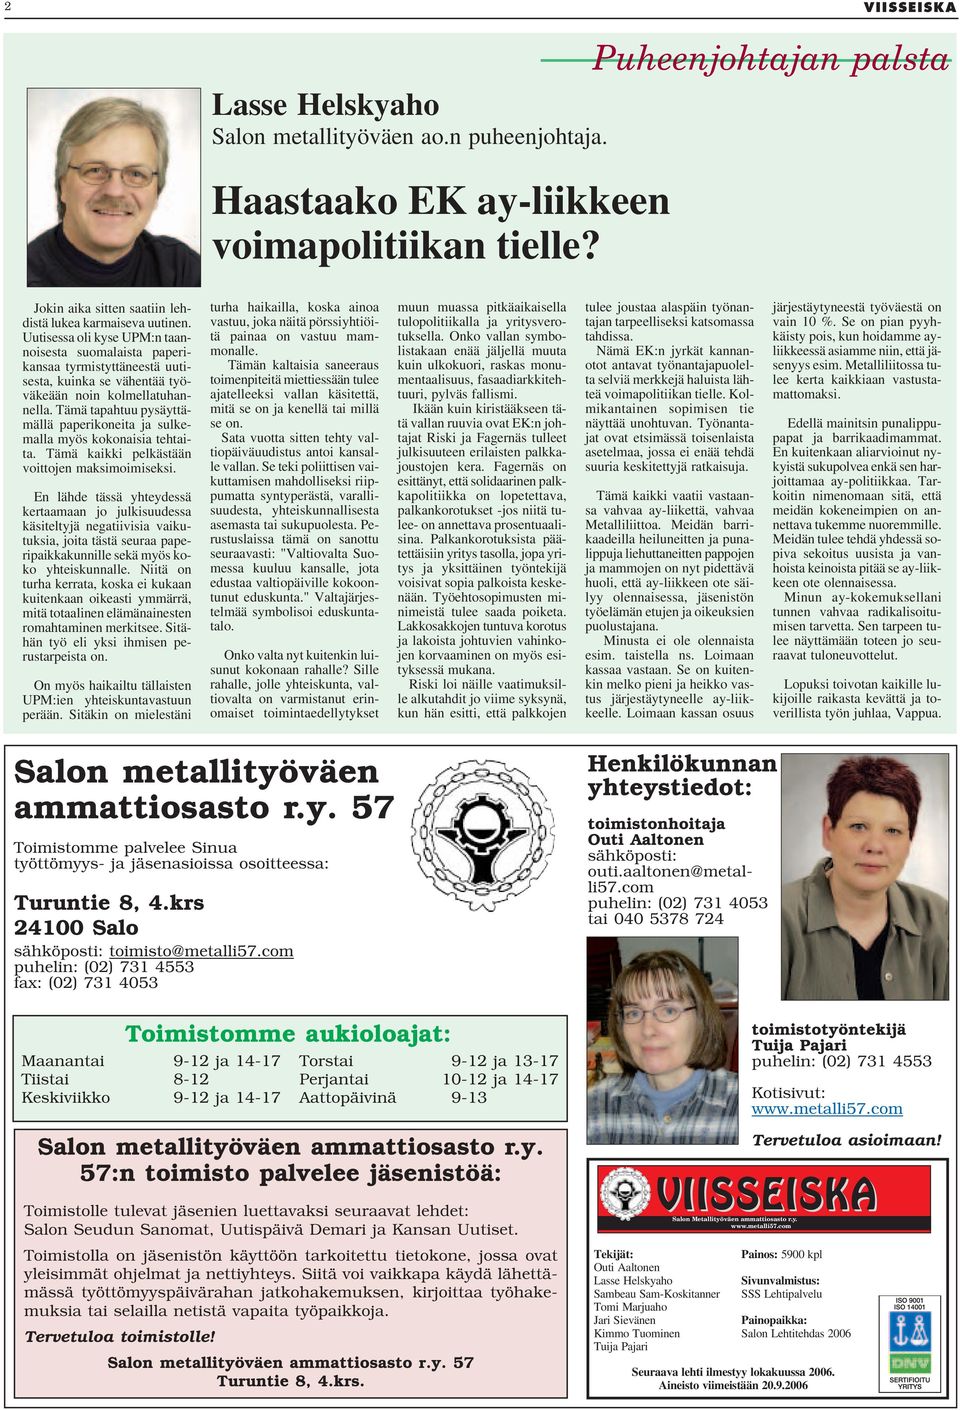 Uutisessa oli kyse UPM:n taannoisesta suomalaista paperikansaa tyrmistyttäneestä uutisesta, kuinka se vähentää työväkeään noin kolmellatuhannella.